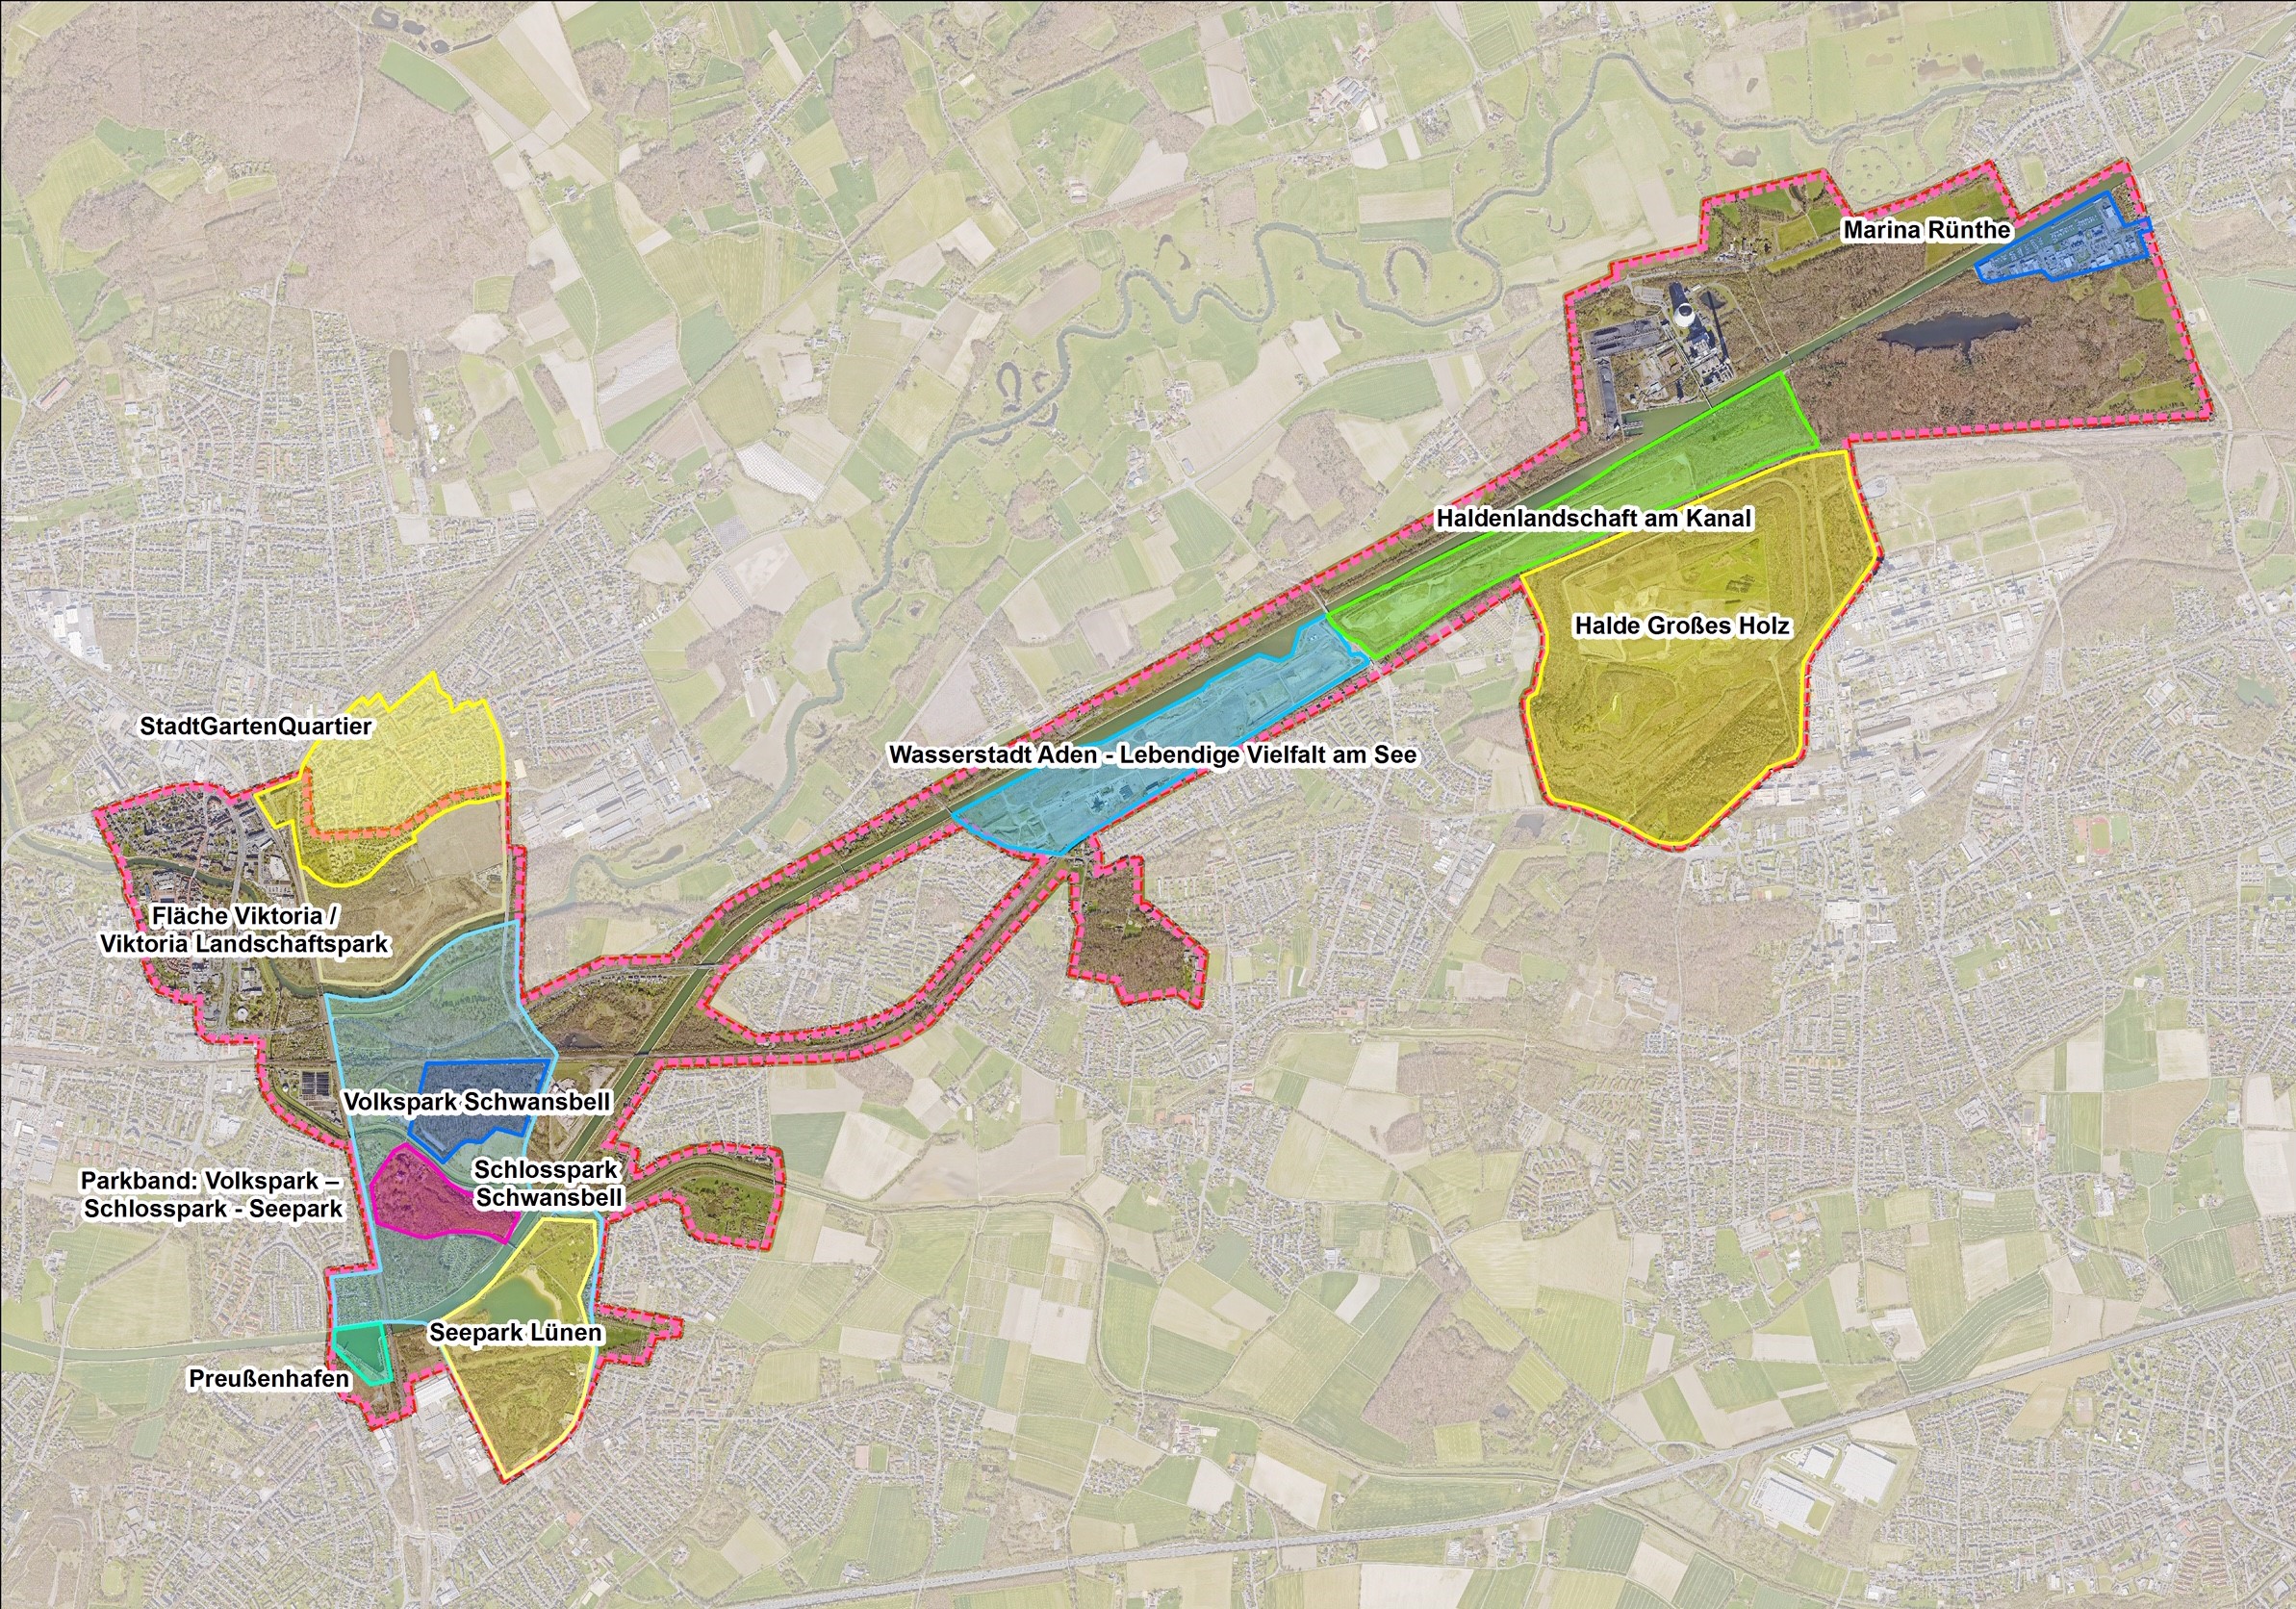 Das Bild zeigt eine Übersichtskarte über das Areal des Zukunftsstandortes Bergkamen & Lünen.